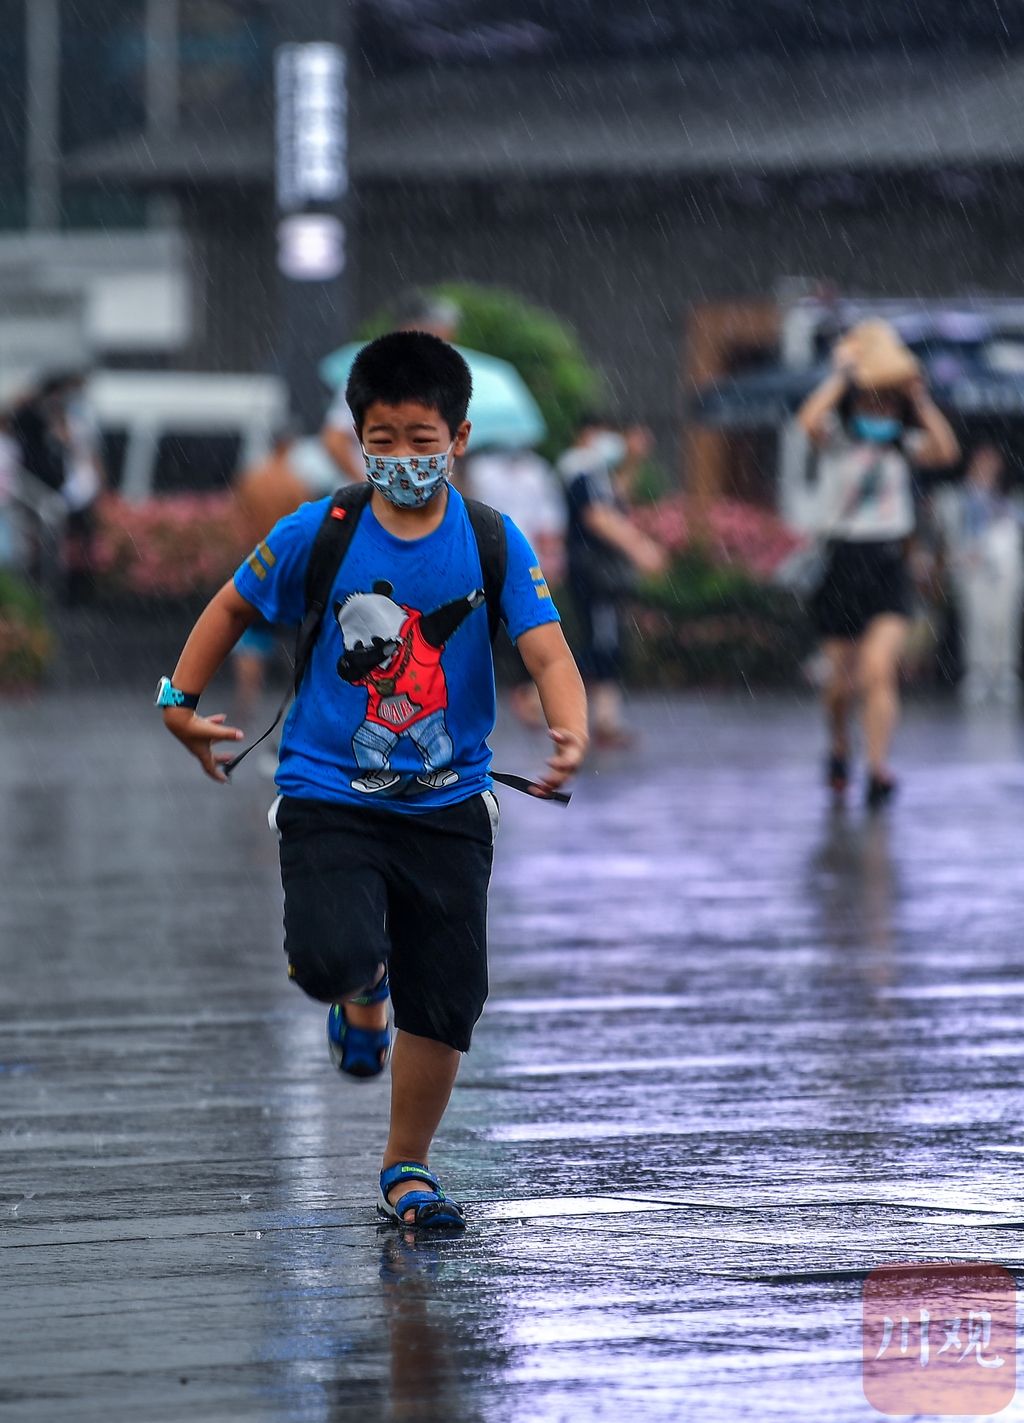 小朋友在雨中跑步前行市民在雨中跑步前行雨中的剪影